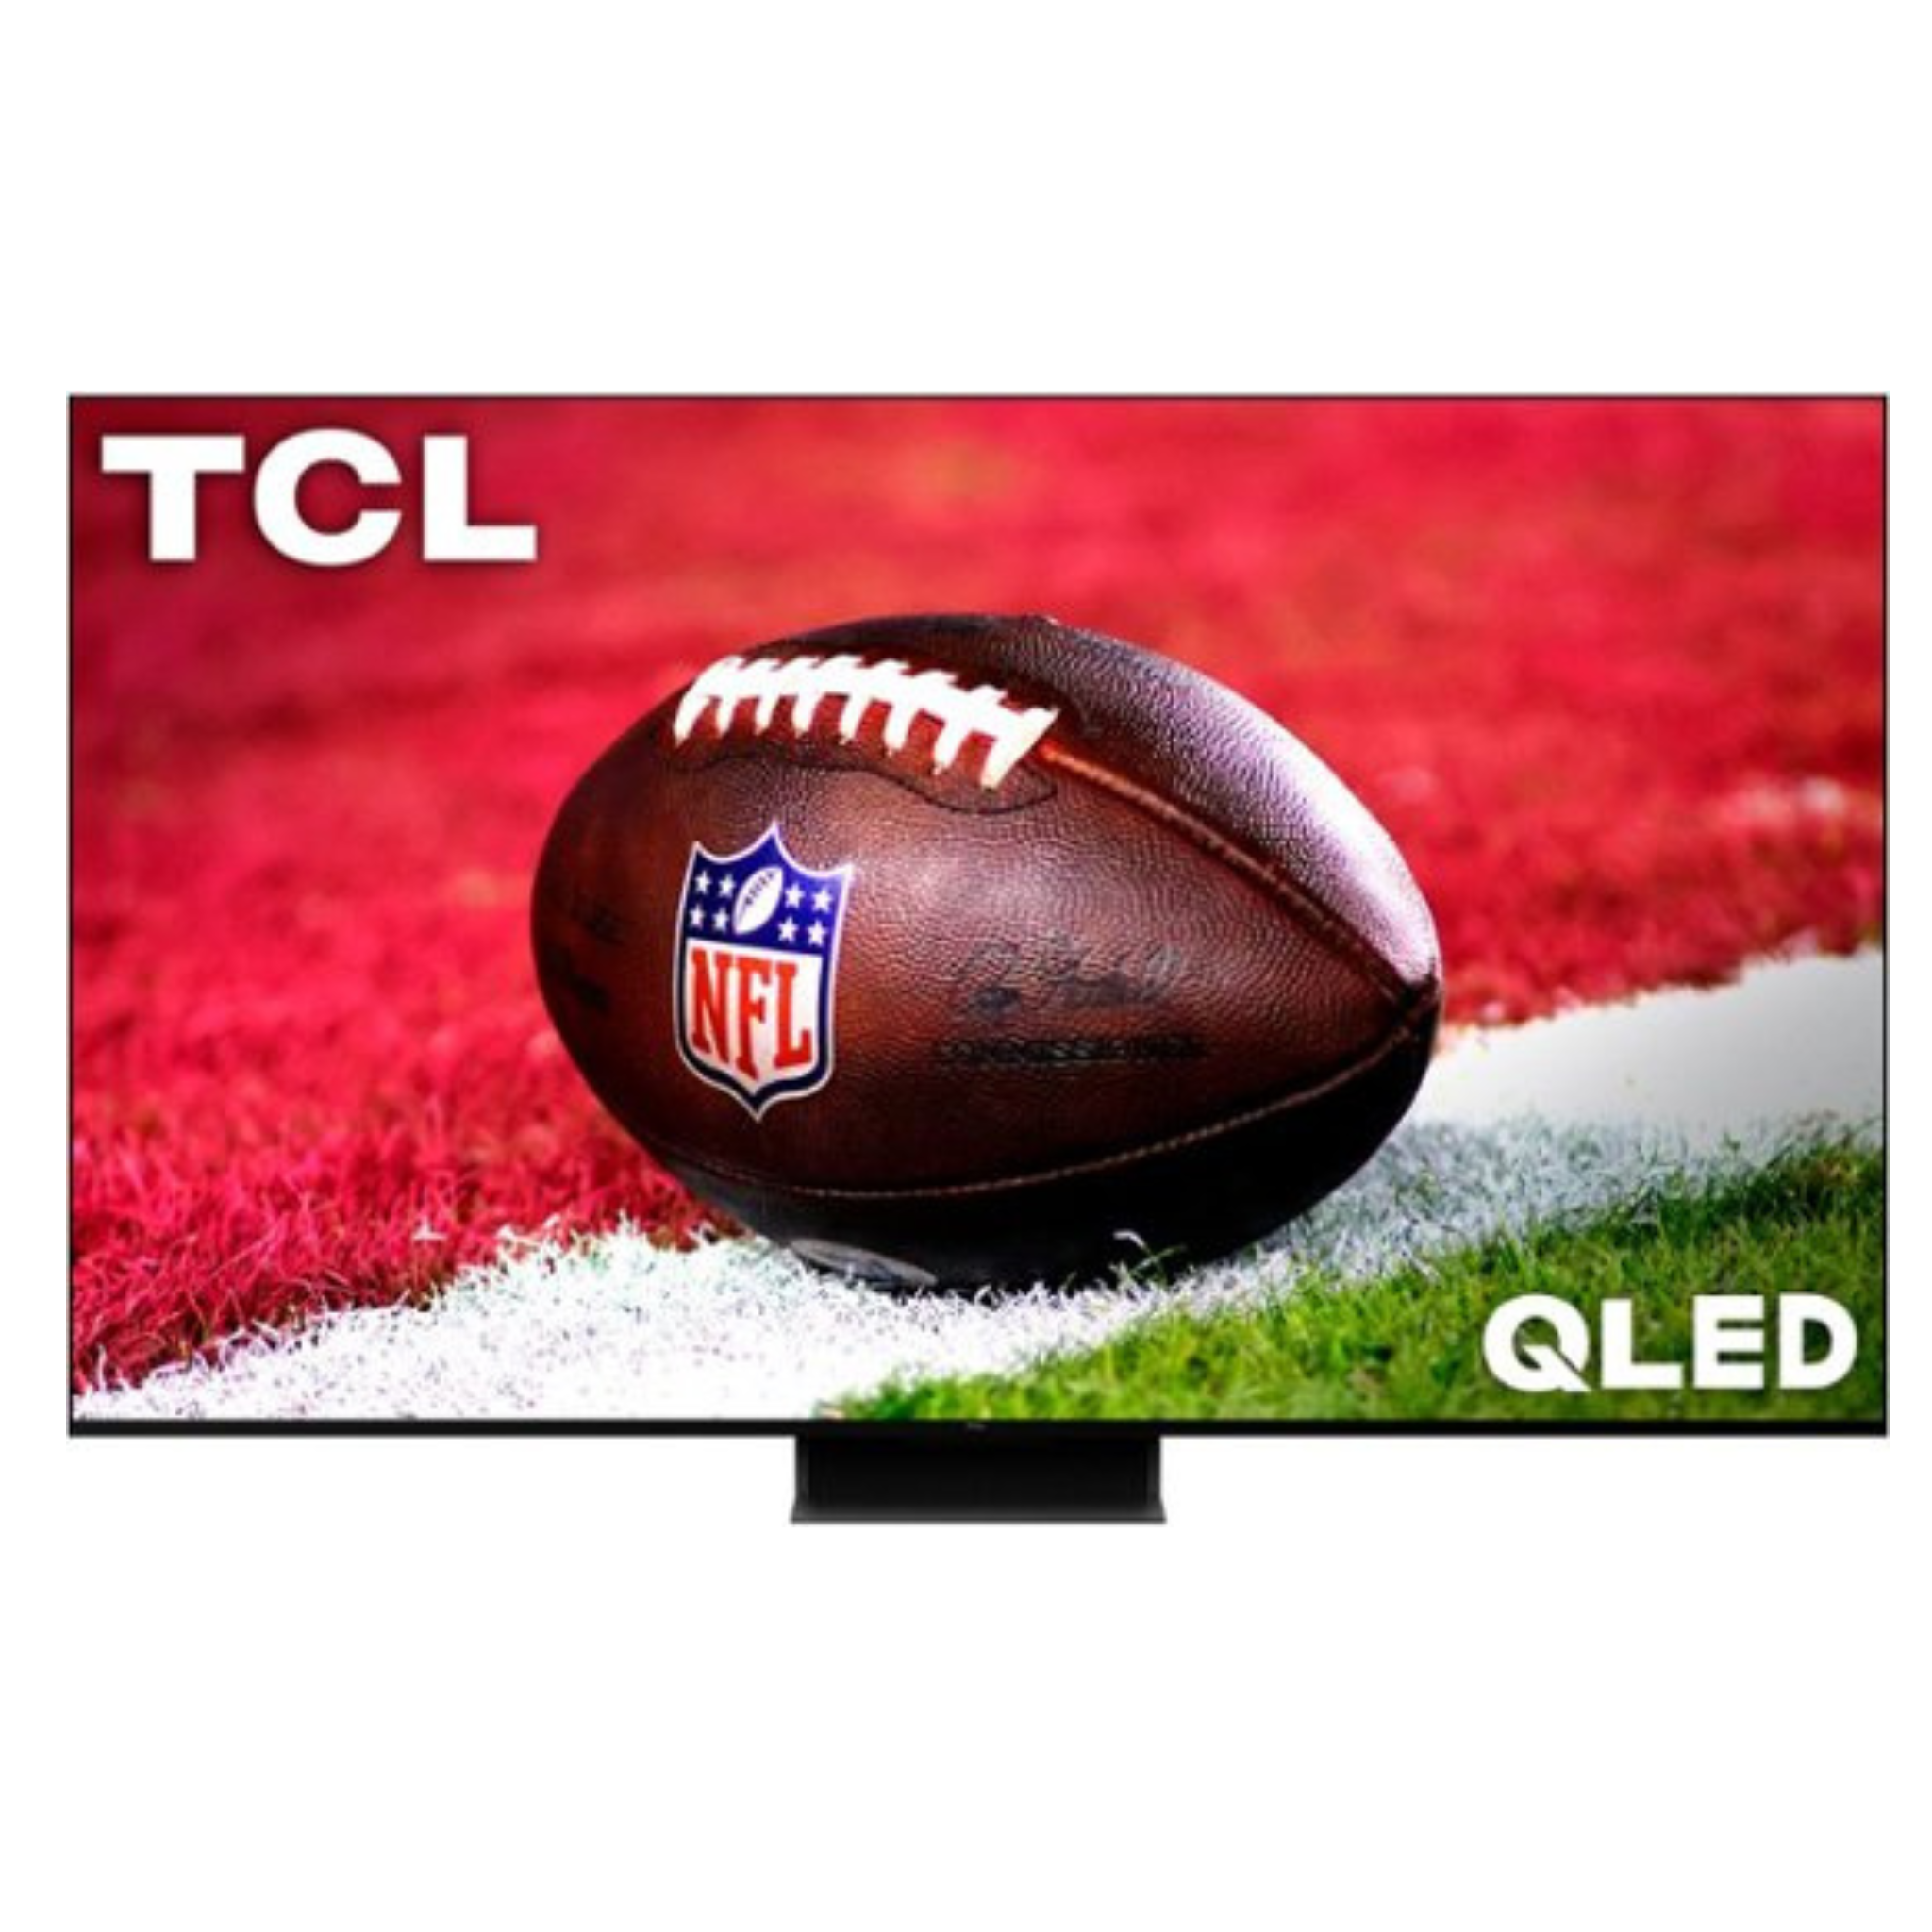 TCL QM8 QLED Mini-LED 4K 120Hz HDR Smart TVs w/ Google TV